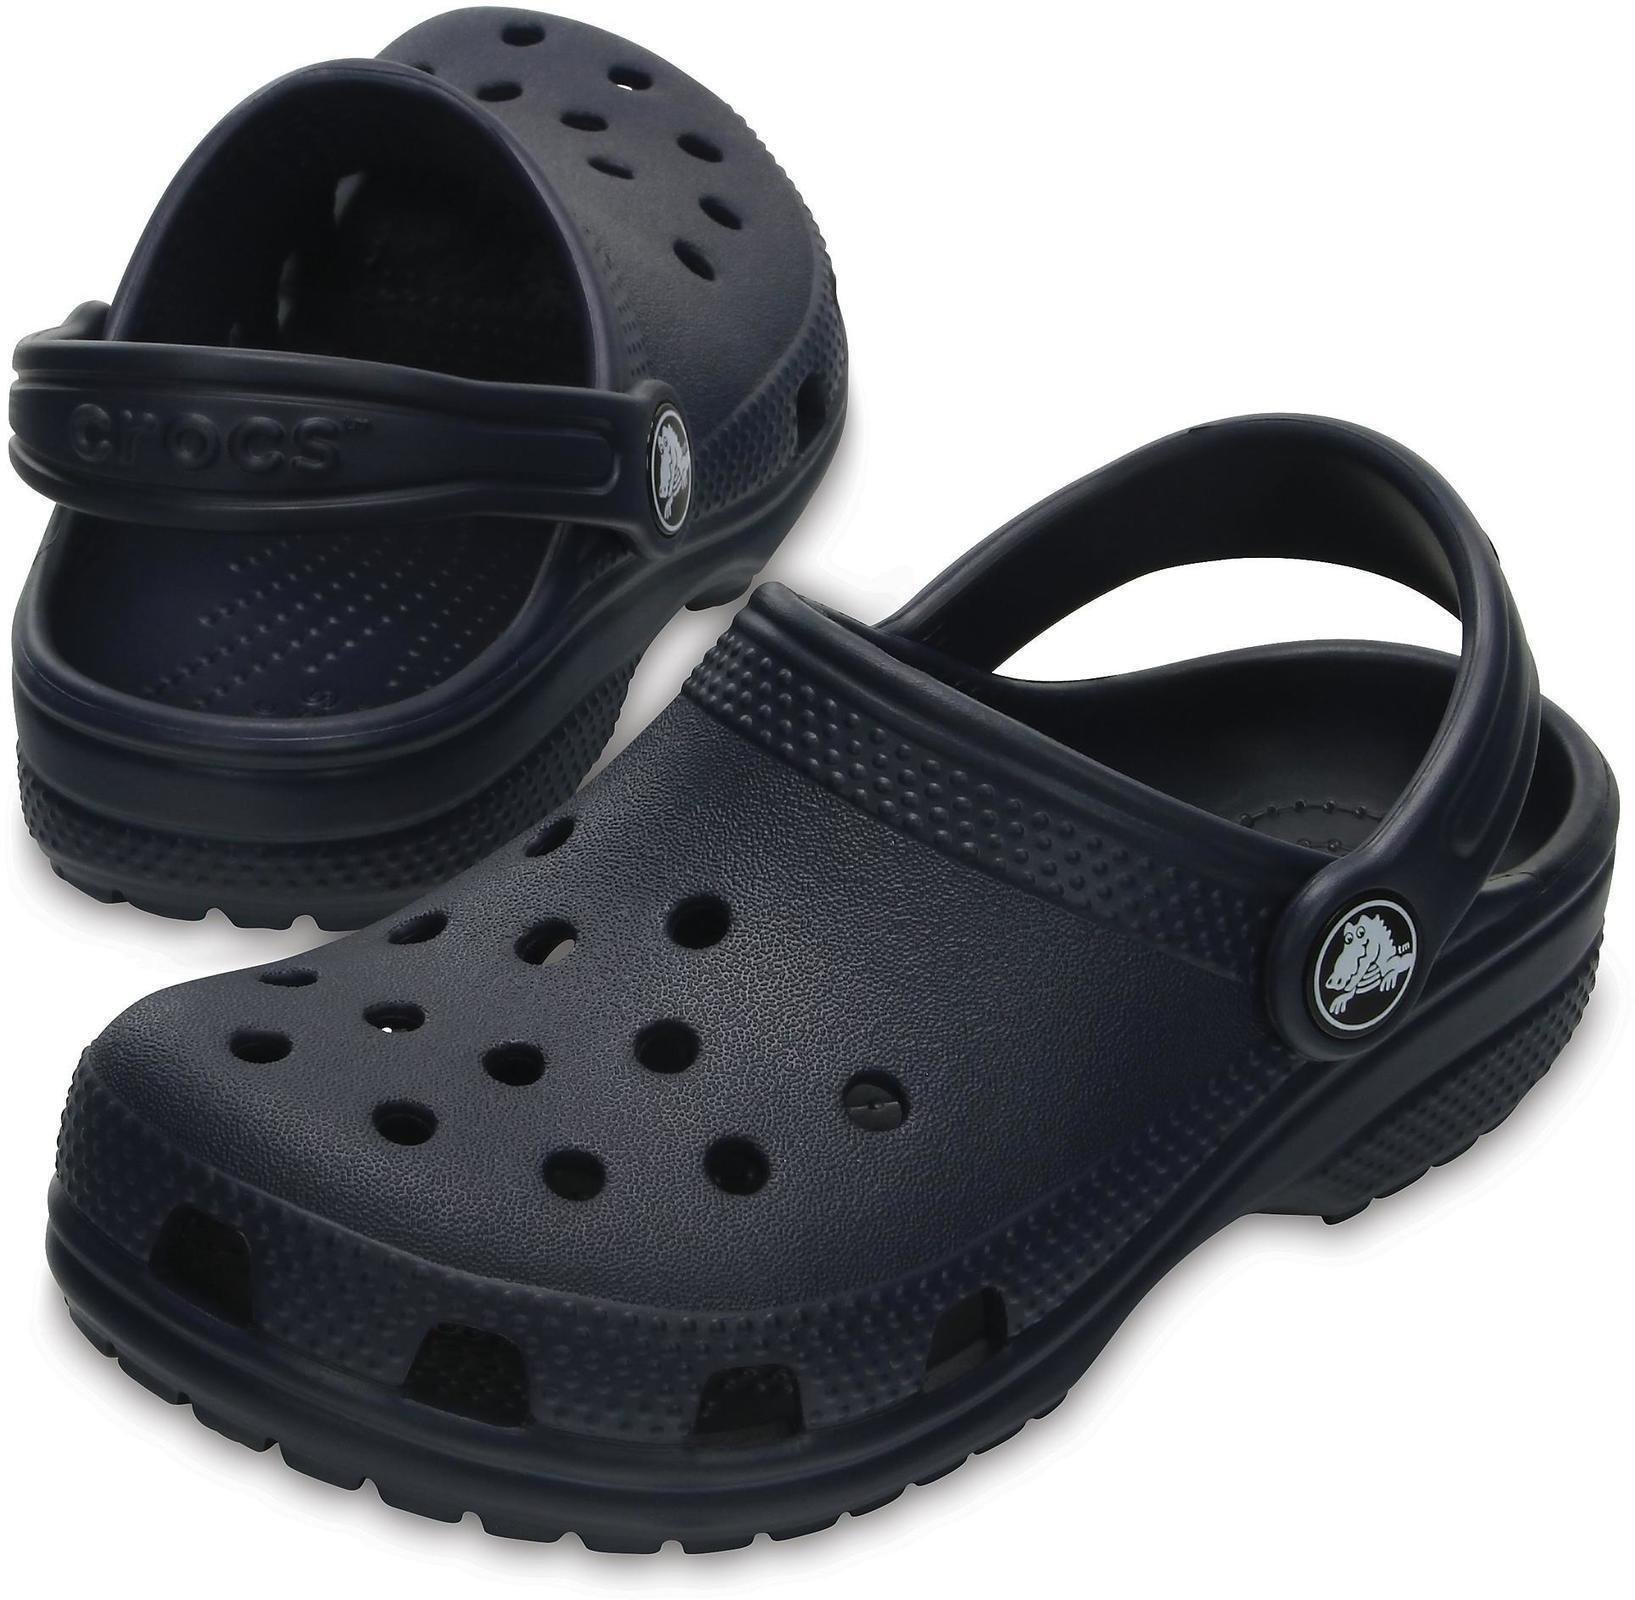 Dječje cipele za jedrenje Crocs Kids' Classic Clog Navy 32-33